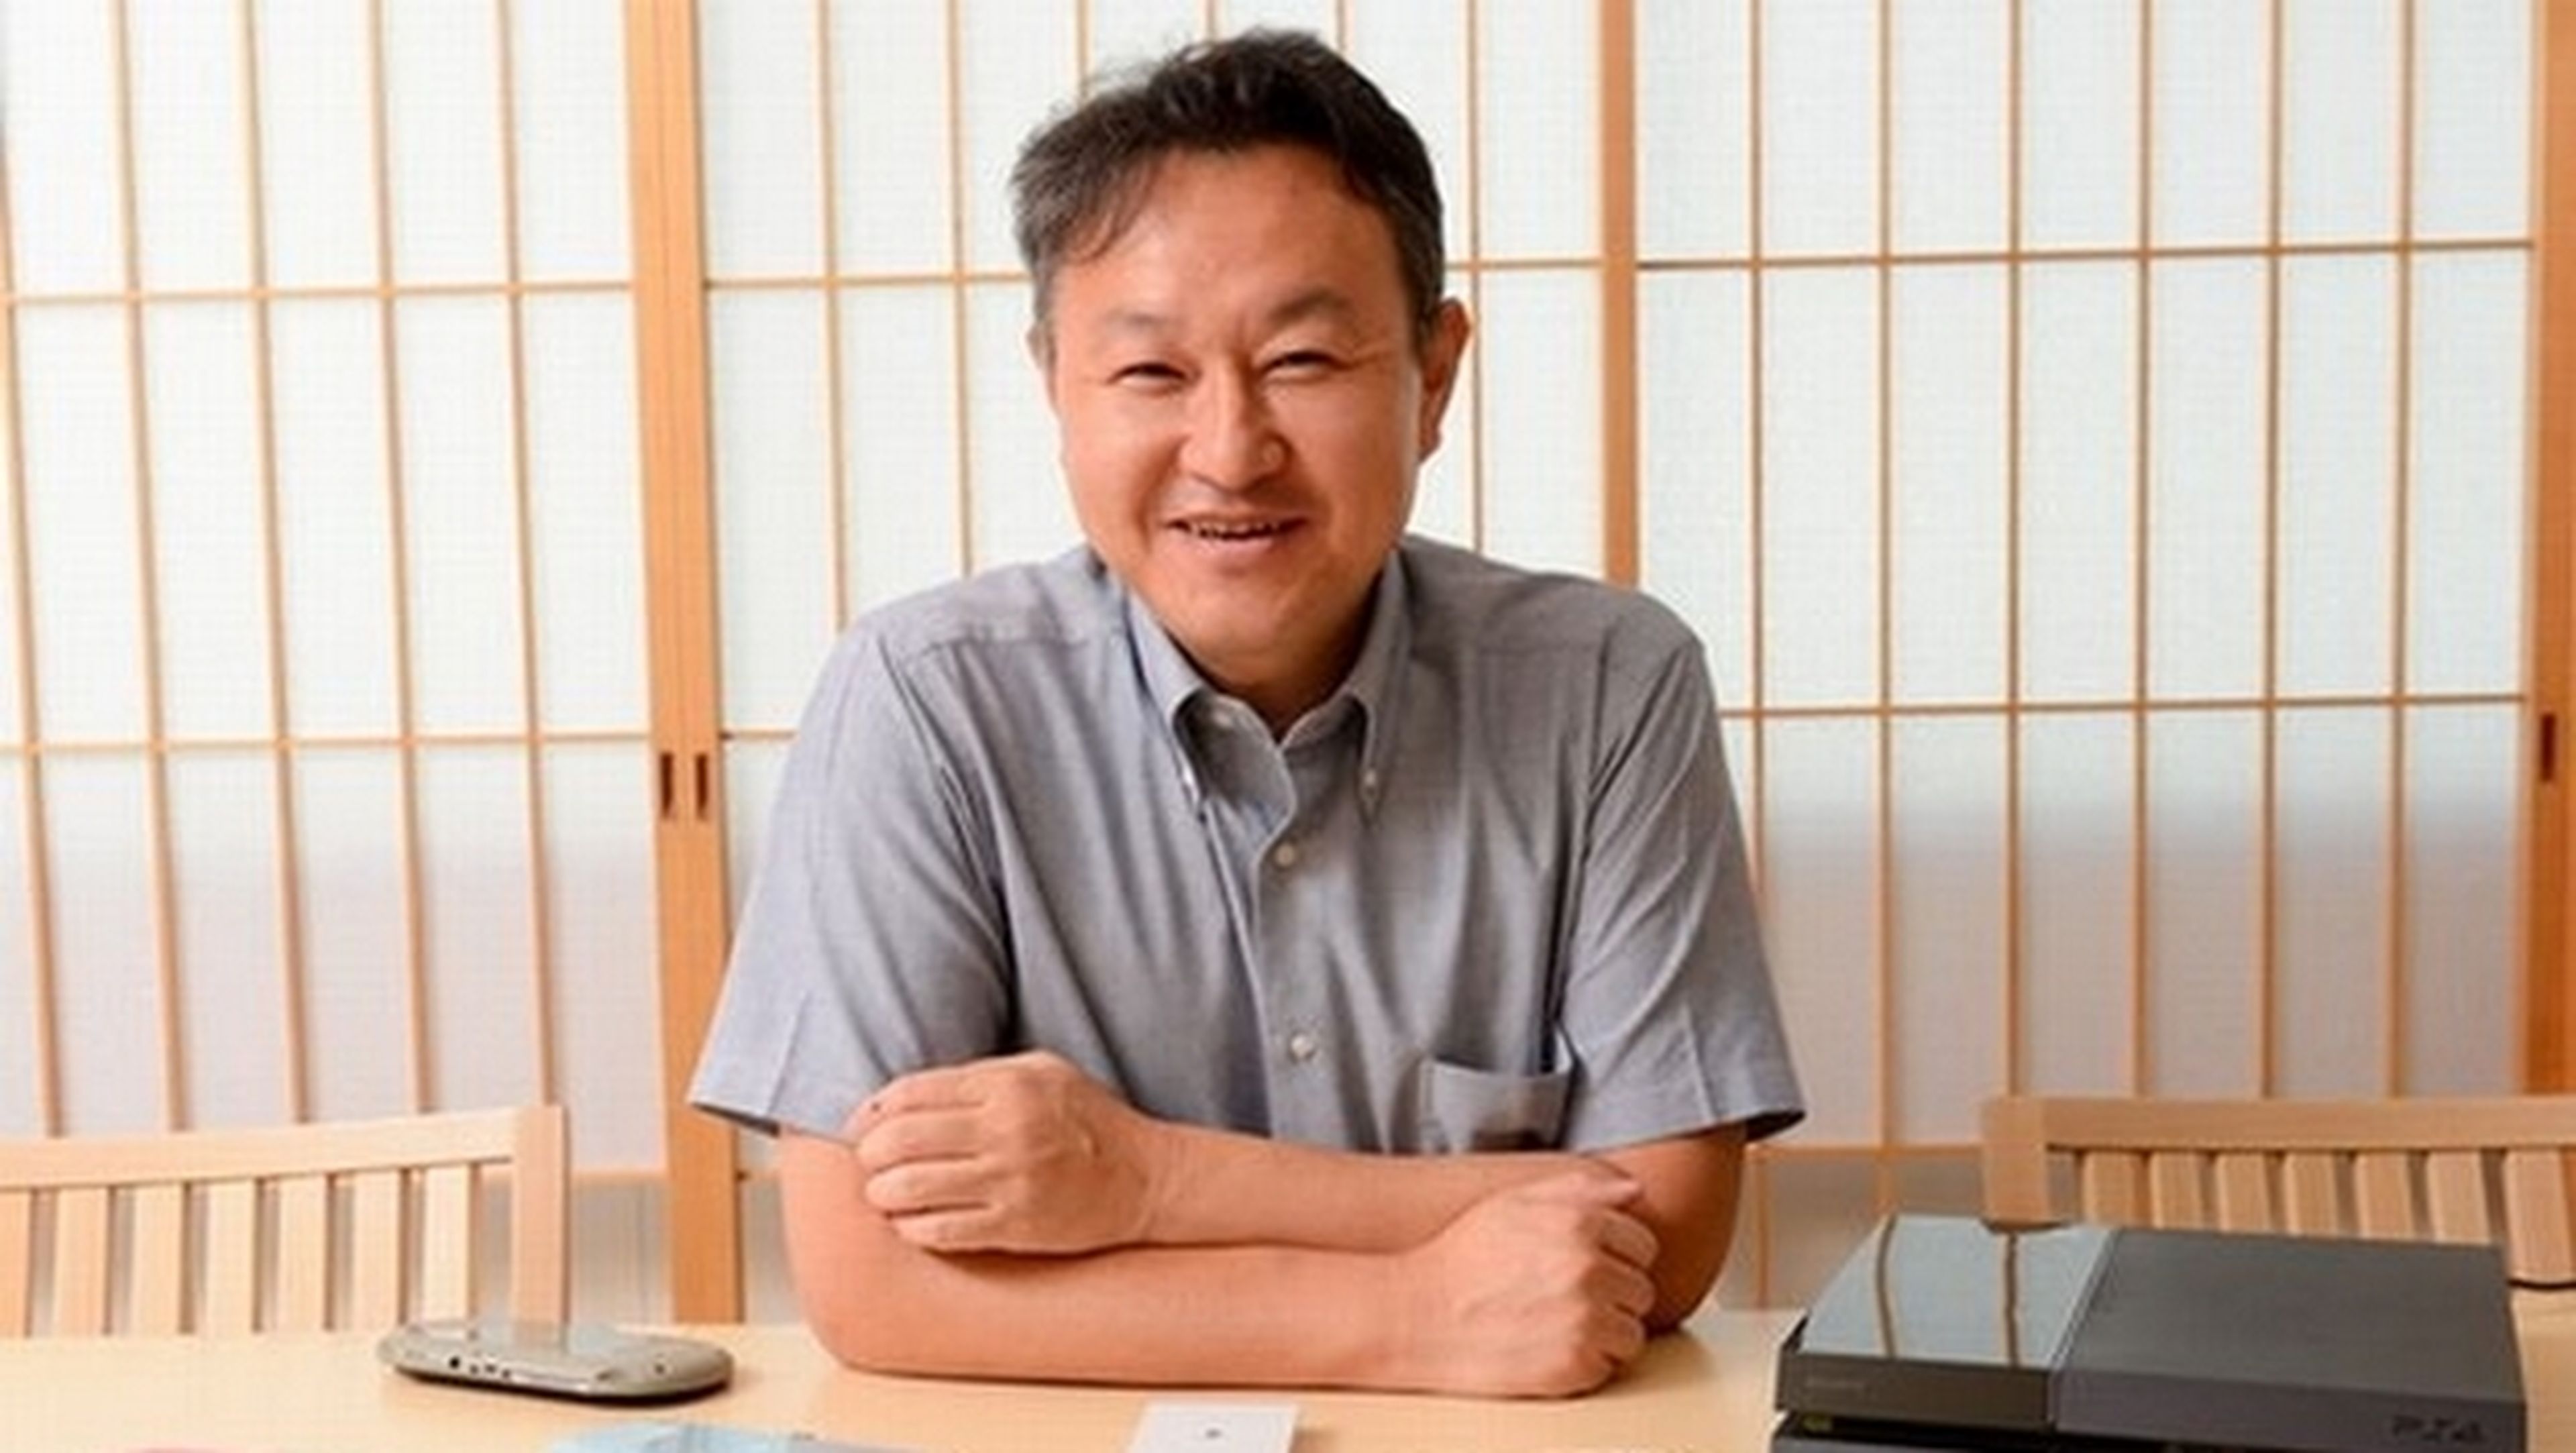 Shuhei Yoshida, Presidente de Sony Computer Entertainment y máximo responsable de PlayStation, ha sido expulsado de Miiverse, la red social de Nintendo, por publicar spam (publicidad)